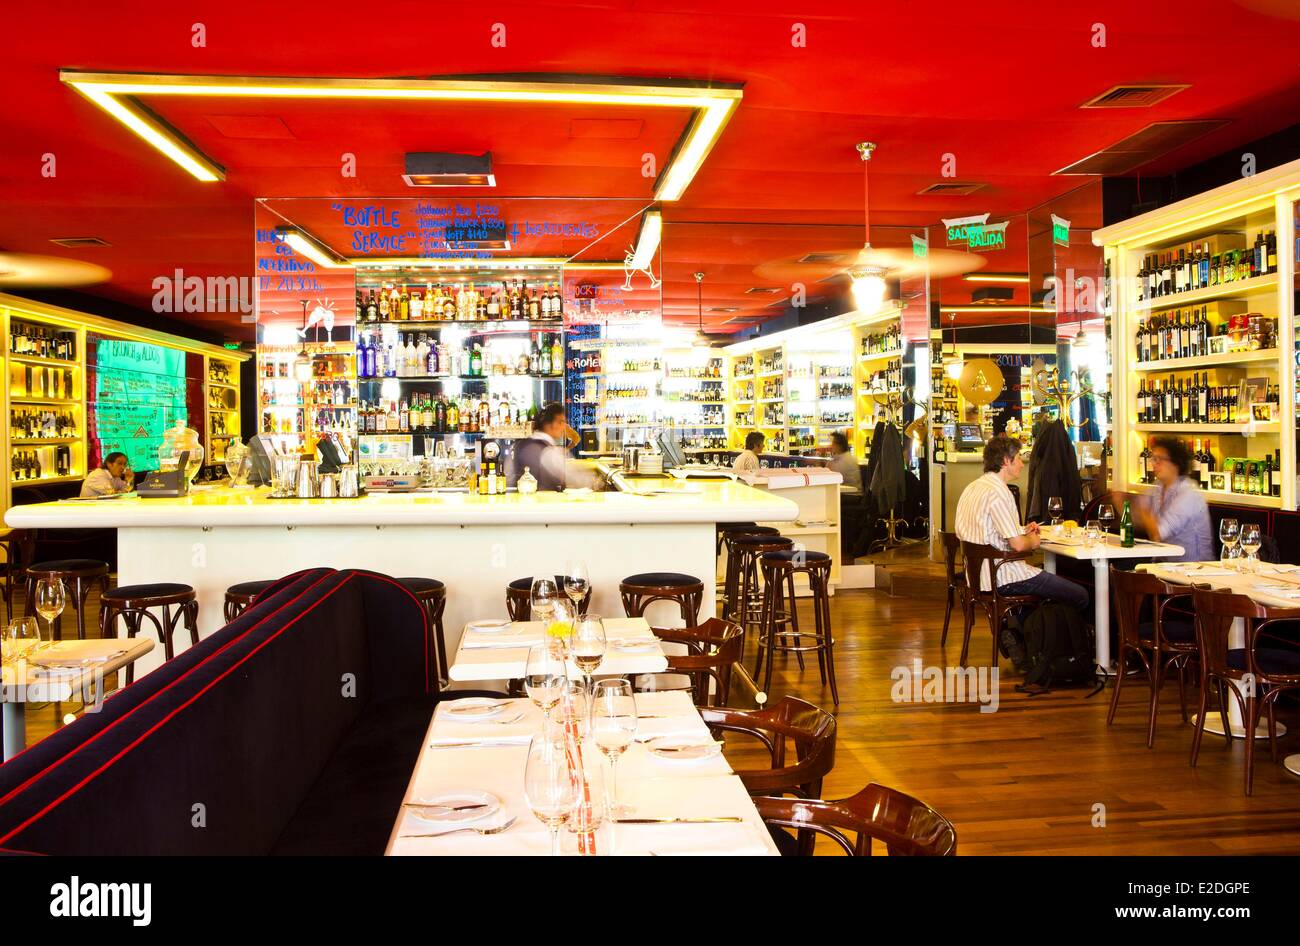 Argentina Buenos Aires interiors of Aldo's restaurant Stock Photo